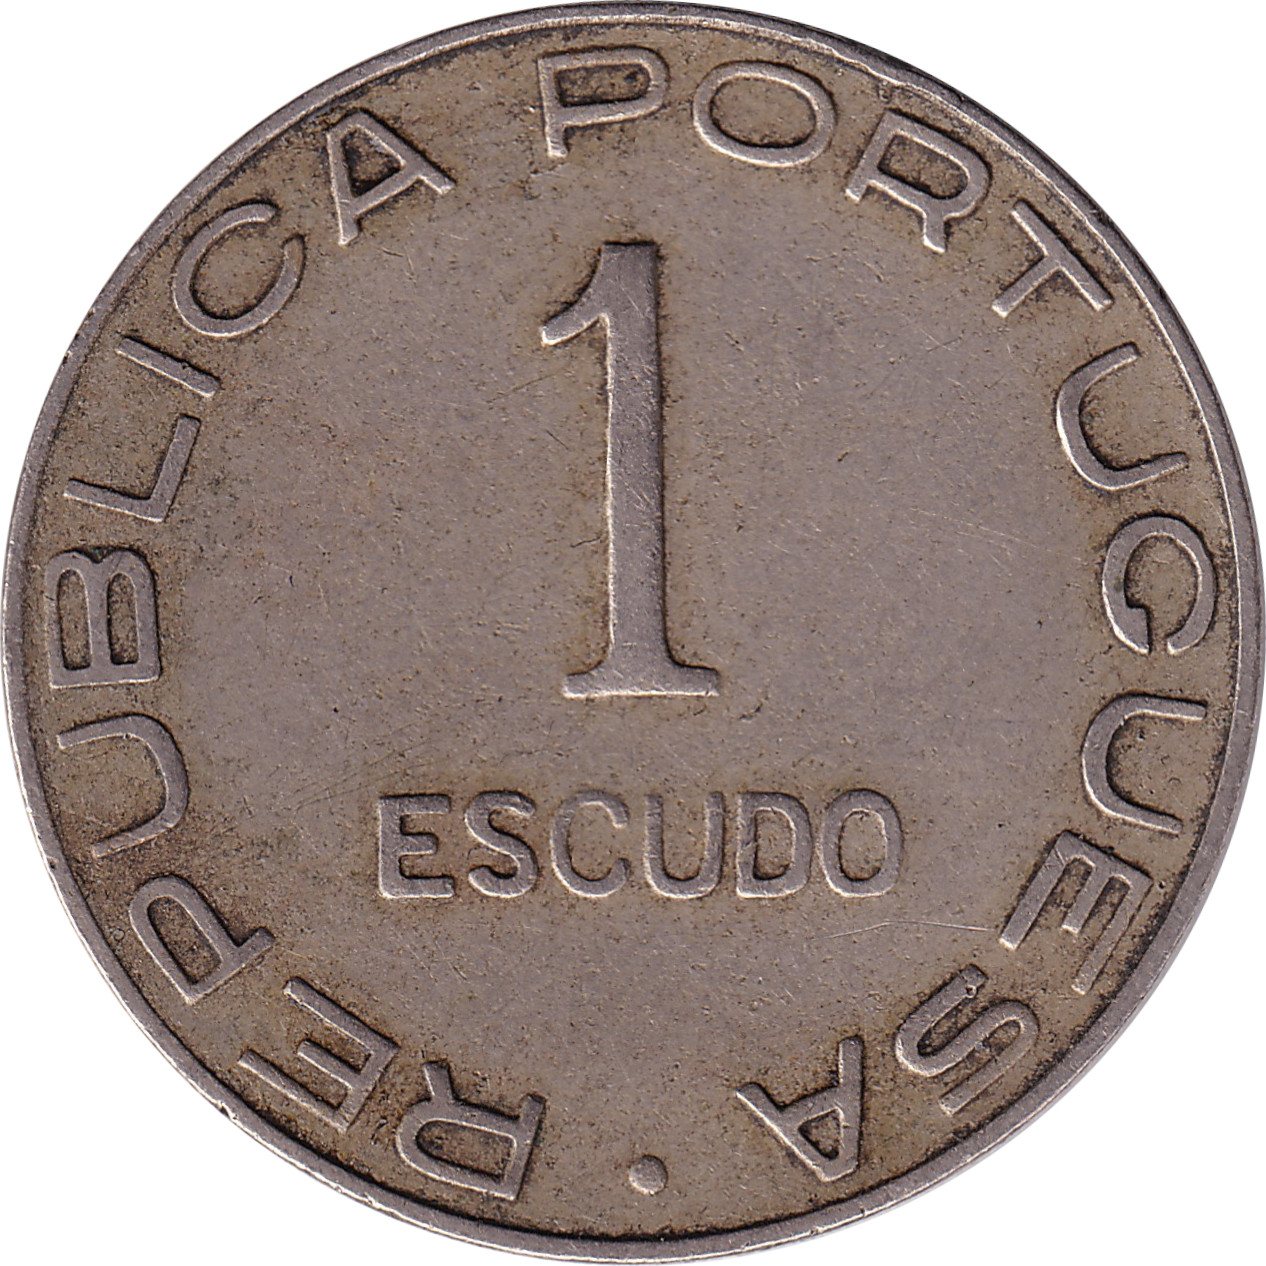 1 escudo - Colonia de Mocambique - Grand blason